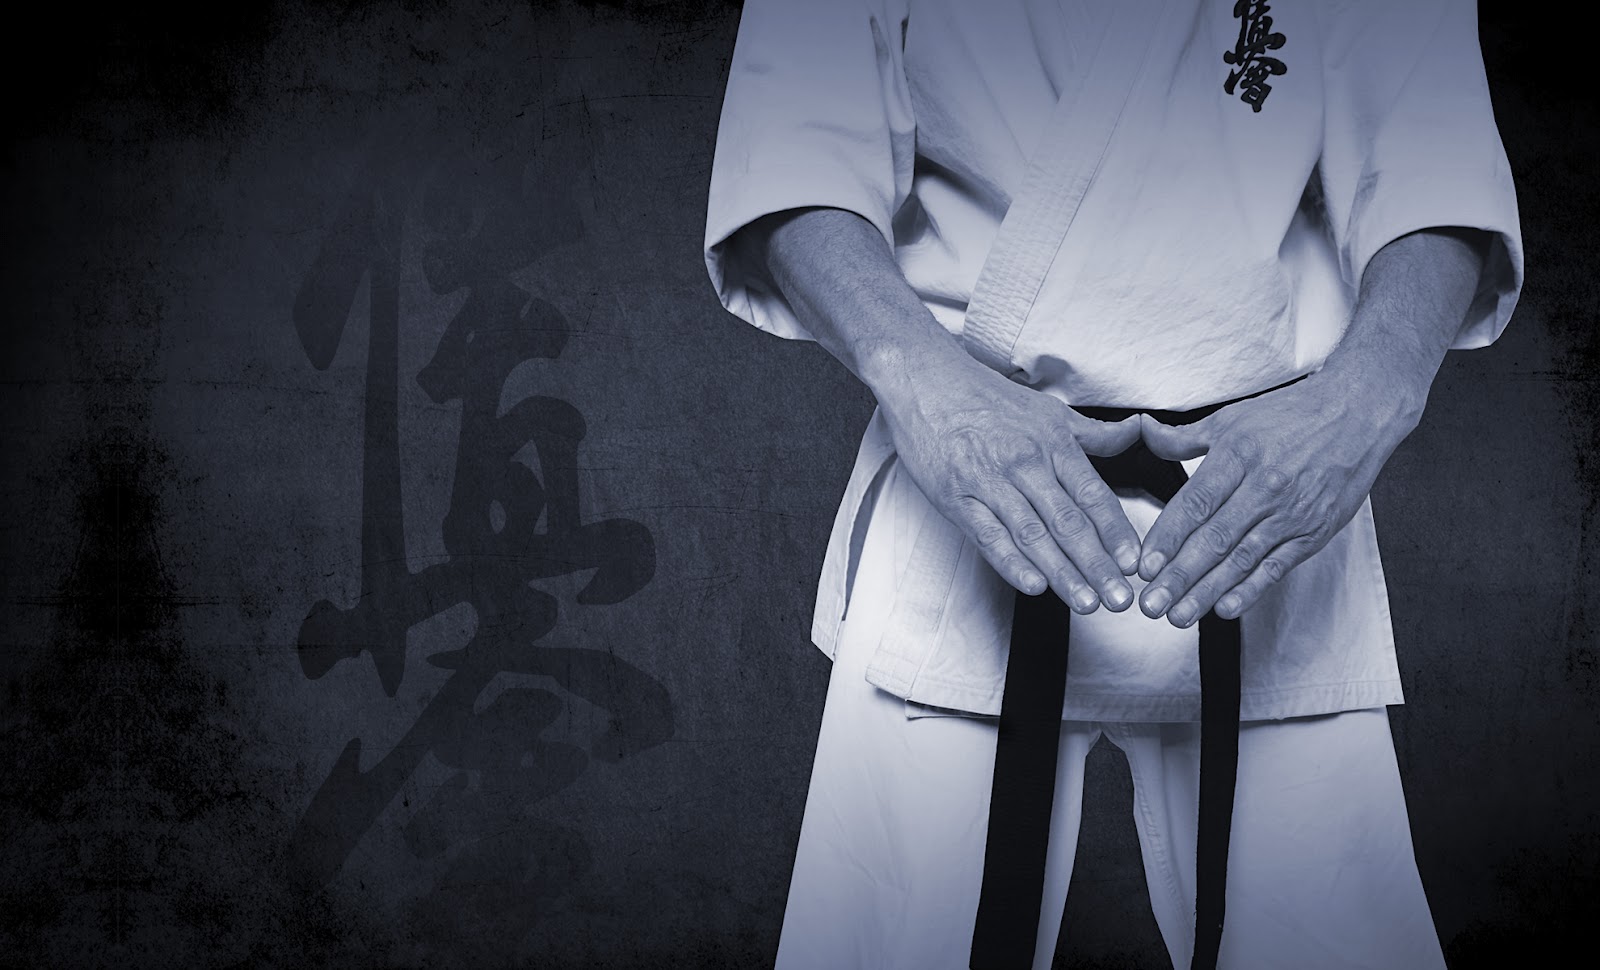 Kyokushin Karate Is Wallpaper PicsWallpapercom